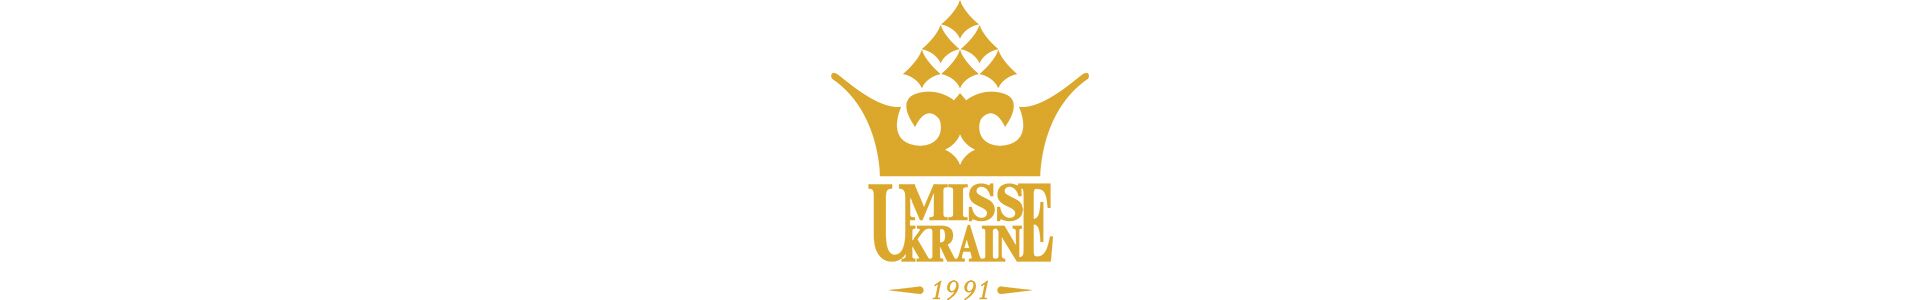 Переможниці "Міс Україна" в fashion story AYSINA і FREEDOM